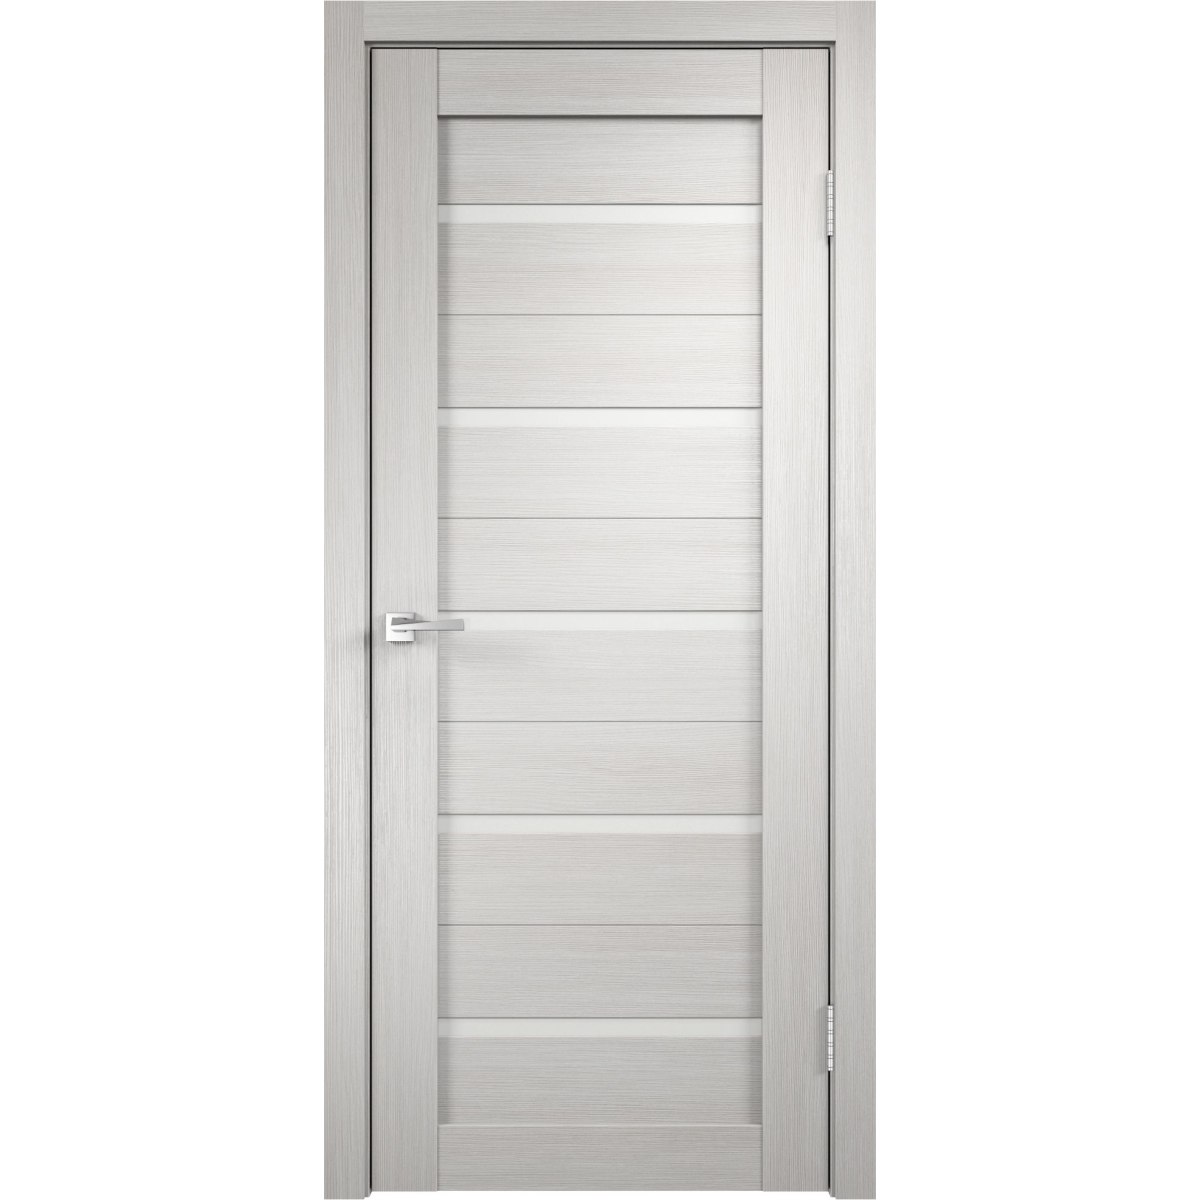 Дверь межкомнатная Дюплекс 80x200 см, ПВХ, цвет белёный дуб